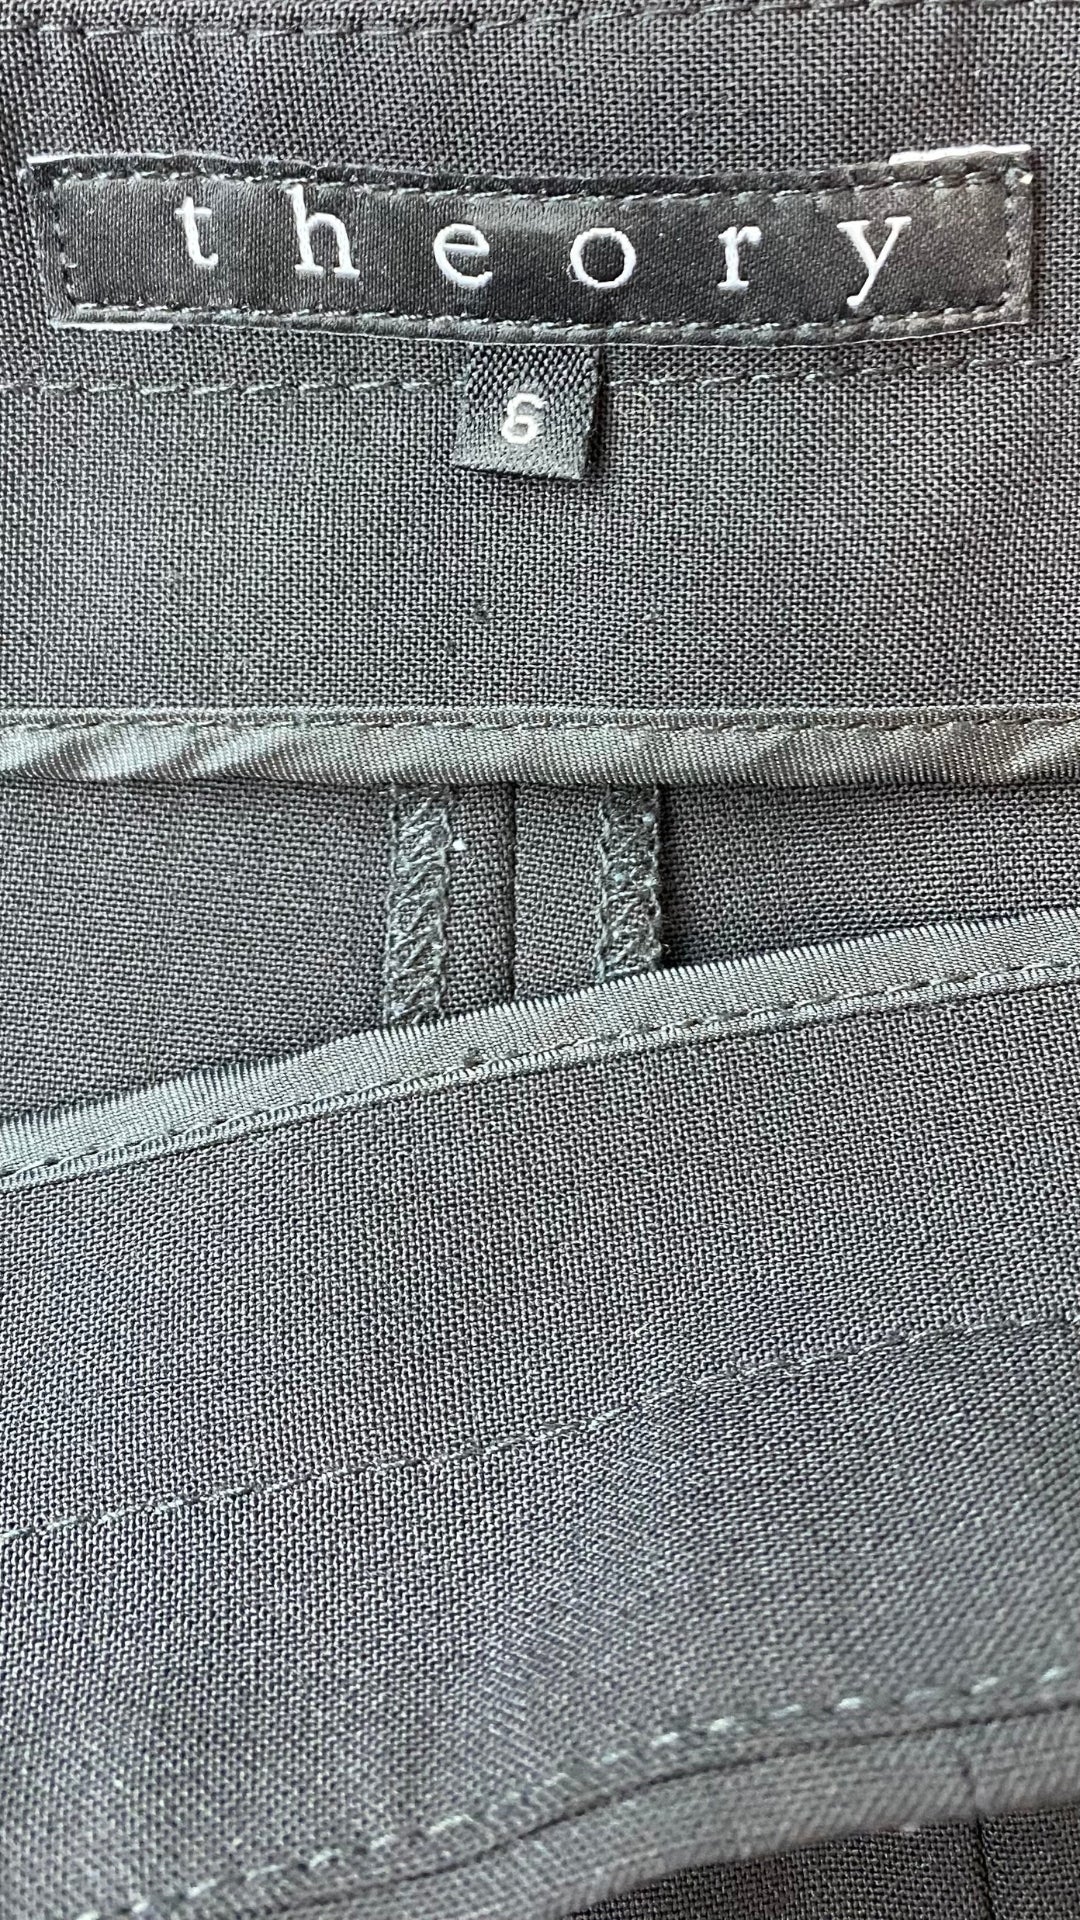 Pantalon noir jambe ample en ultra fin lainage Theory, taille 6. Vue de l'étiquette de marque et taille.